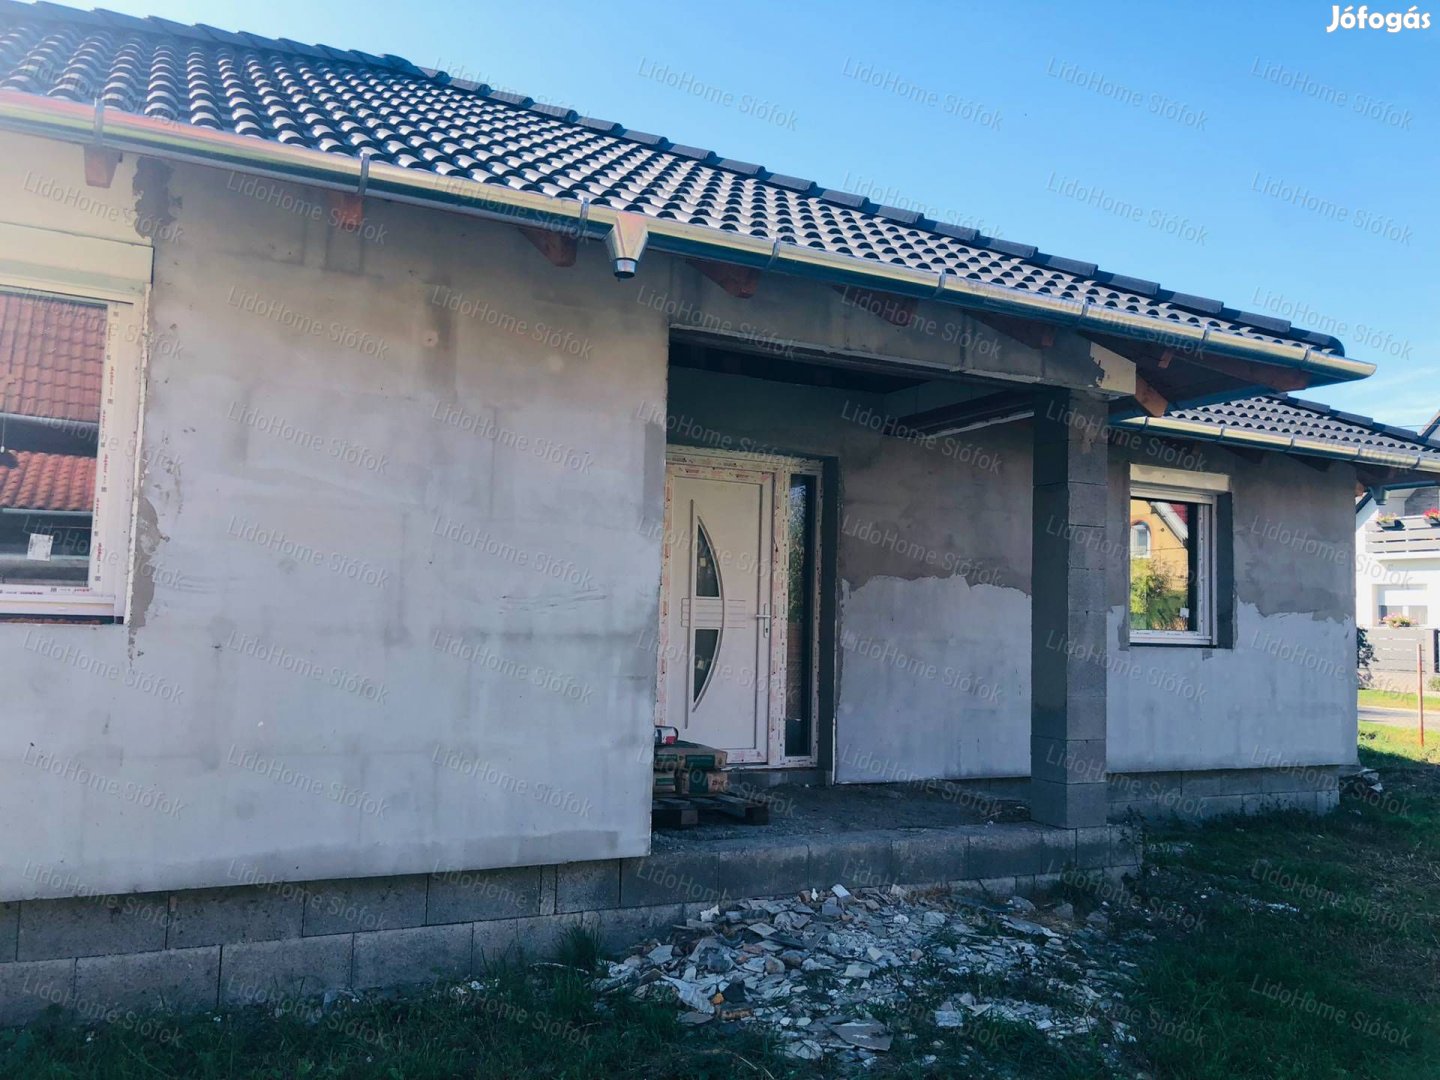 Eladó Siófokon egy szerkezetkész családi ház